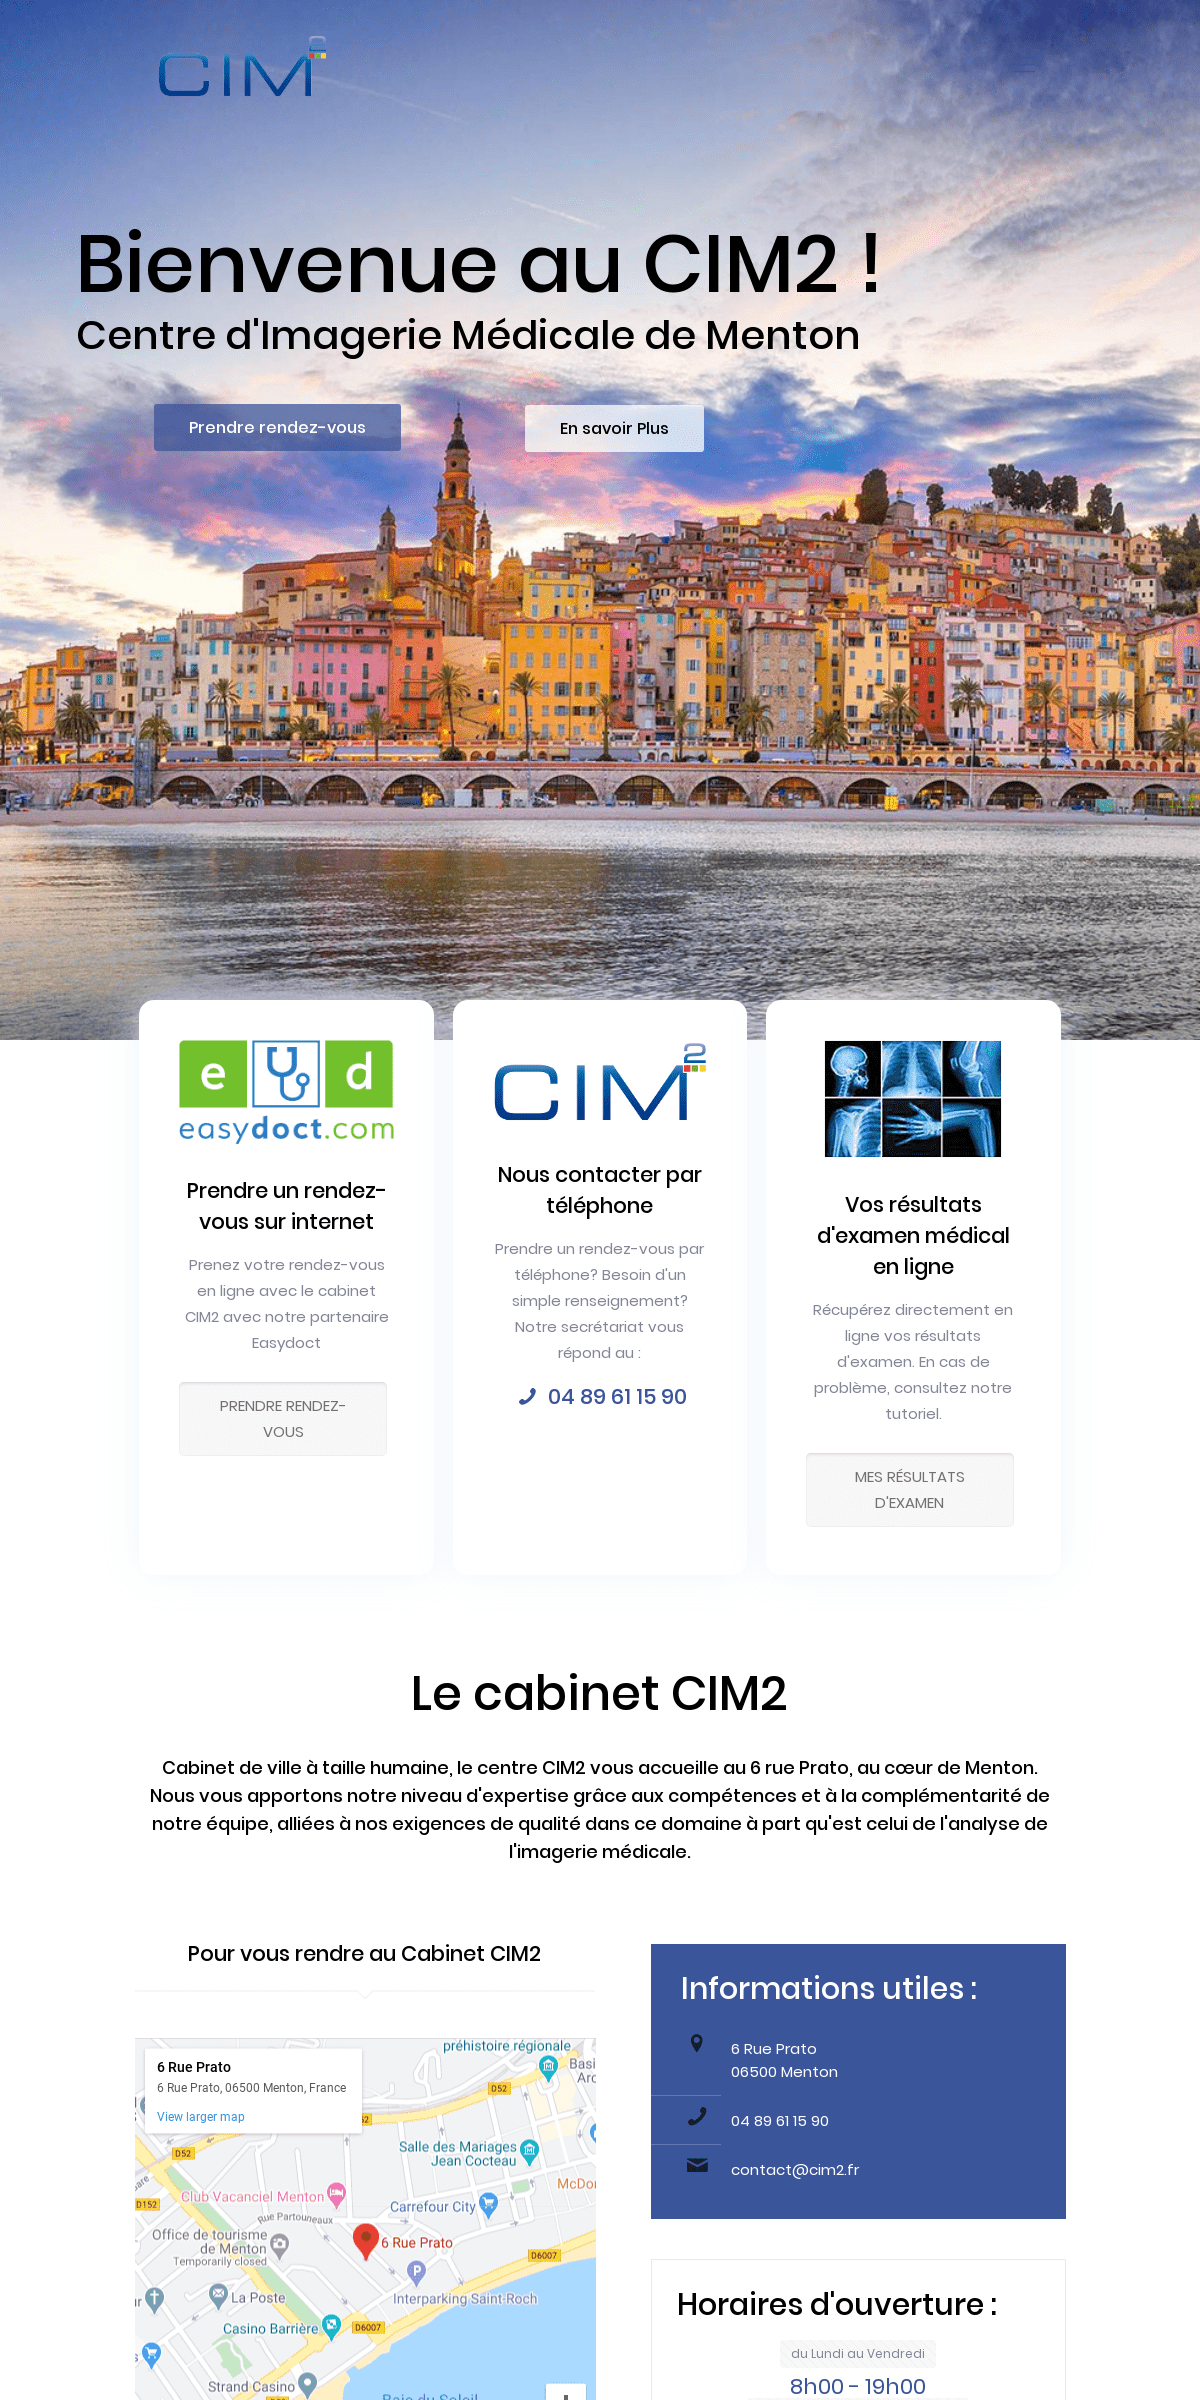 A complete backup of cim2.fr